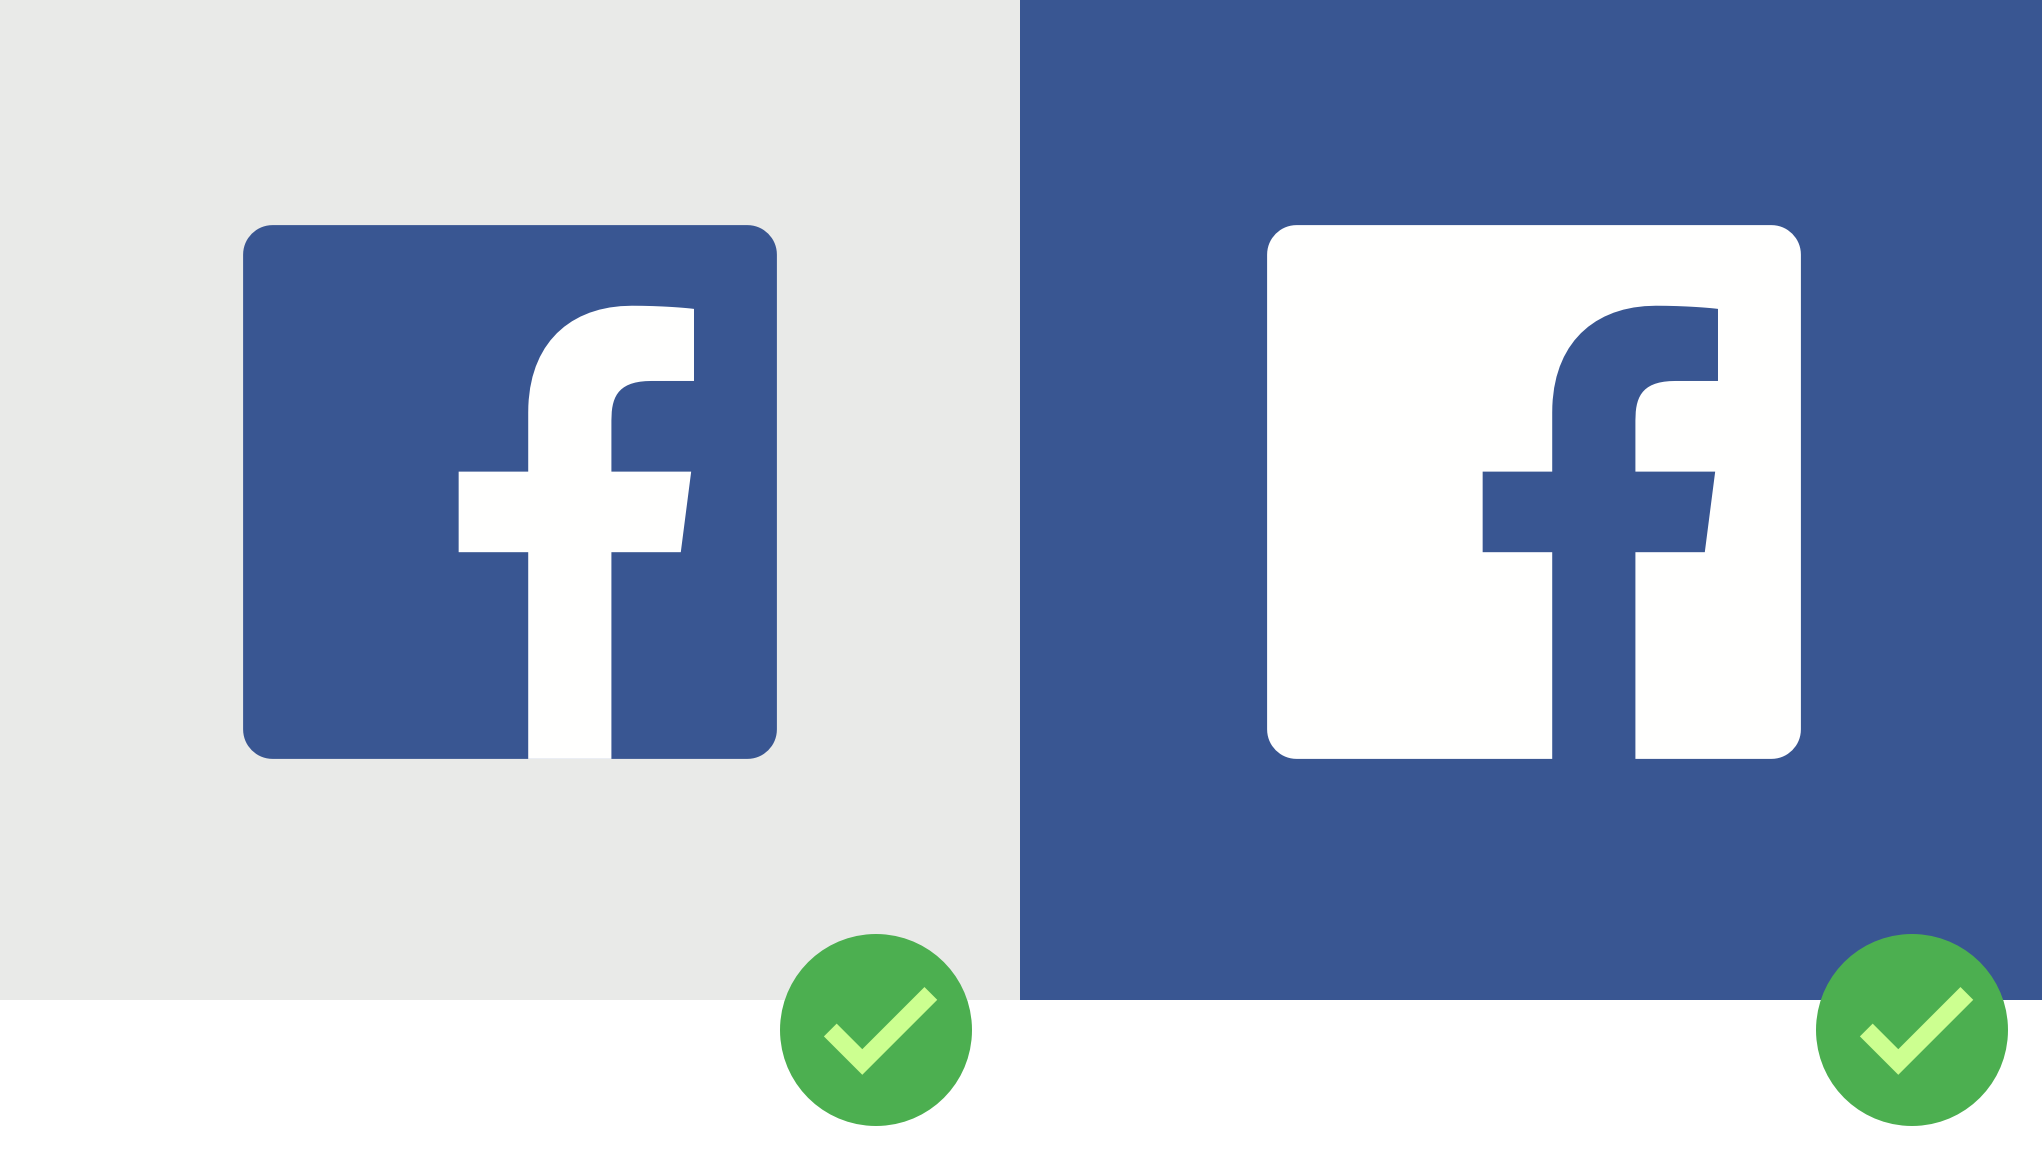 facebook logo - Google Search